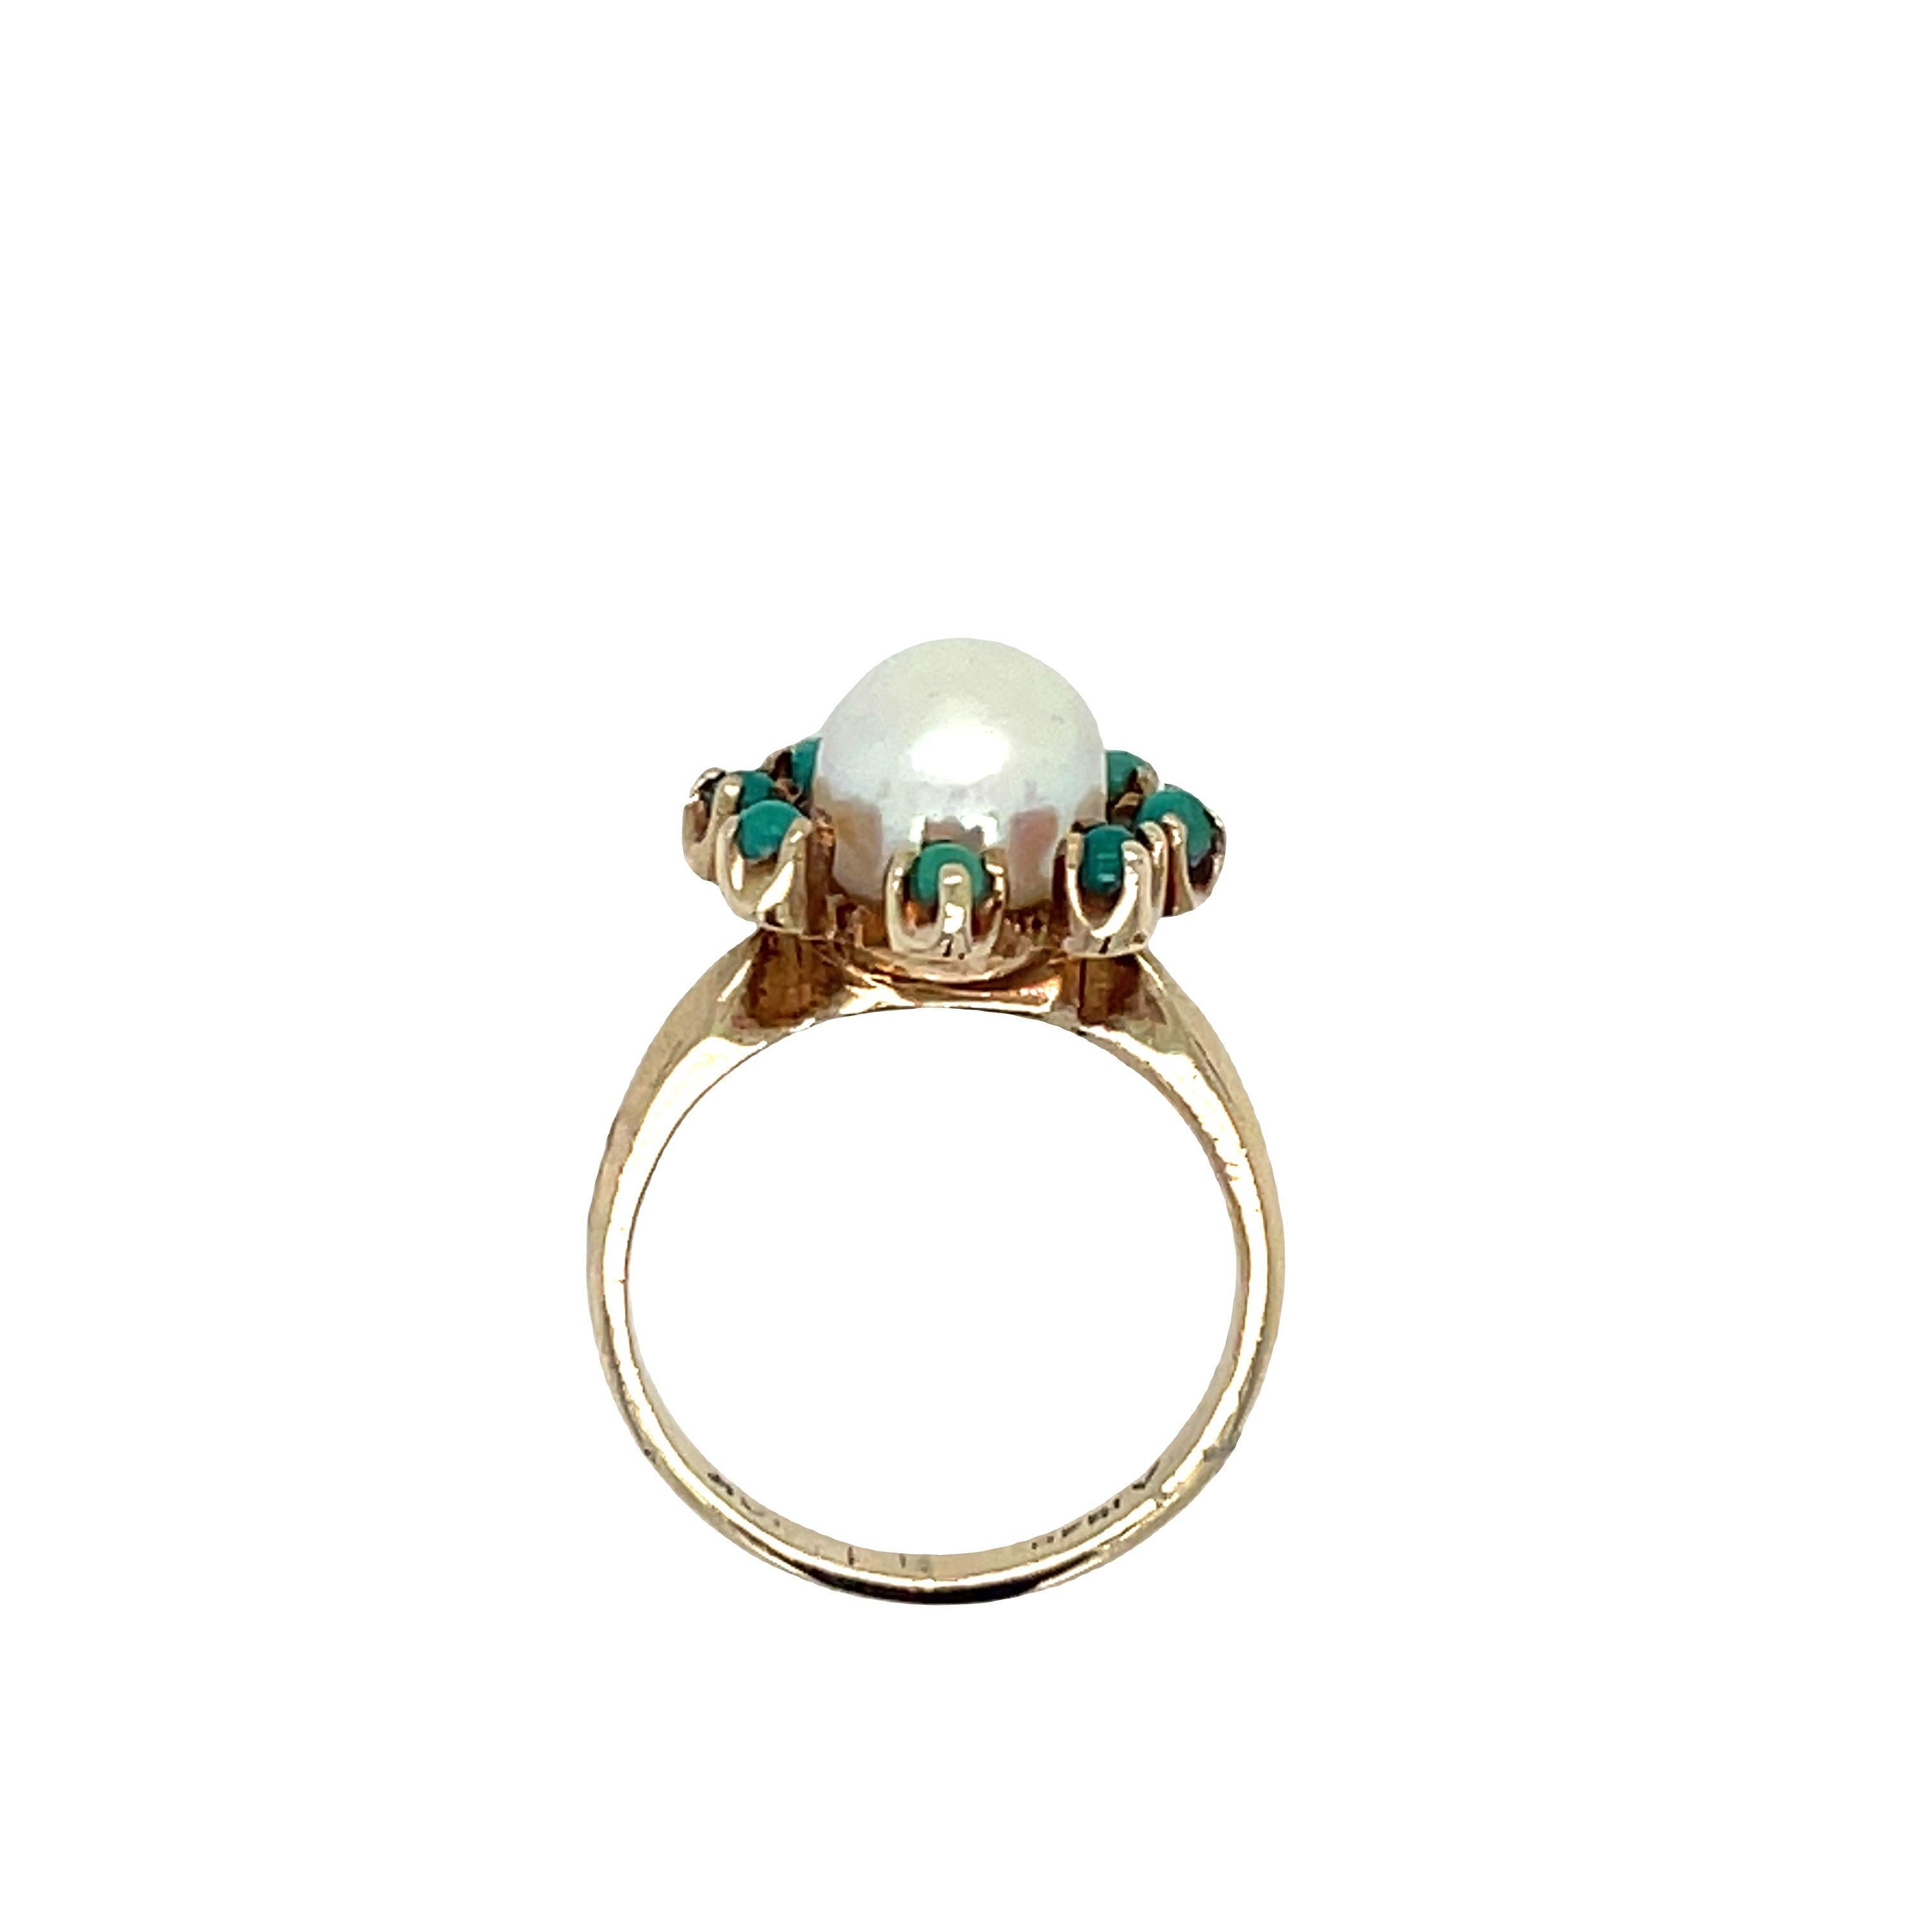 Schöne antike Ring in 10k Gelbgold gefertigt. Dieses schöne Stück zeigt eine zentrale Perle, die von acht kleinen runden Türkisen in einer Cluster-Fassung umgeben ist.
Der Ring im Vintage-Stil zeigt eine 5,8 mm große Zuchtperle, die elegant von den